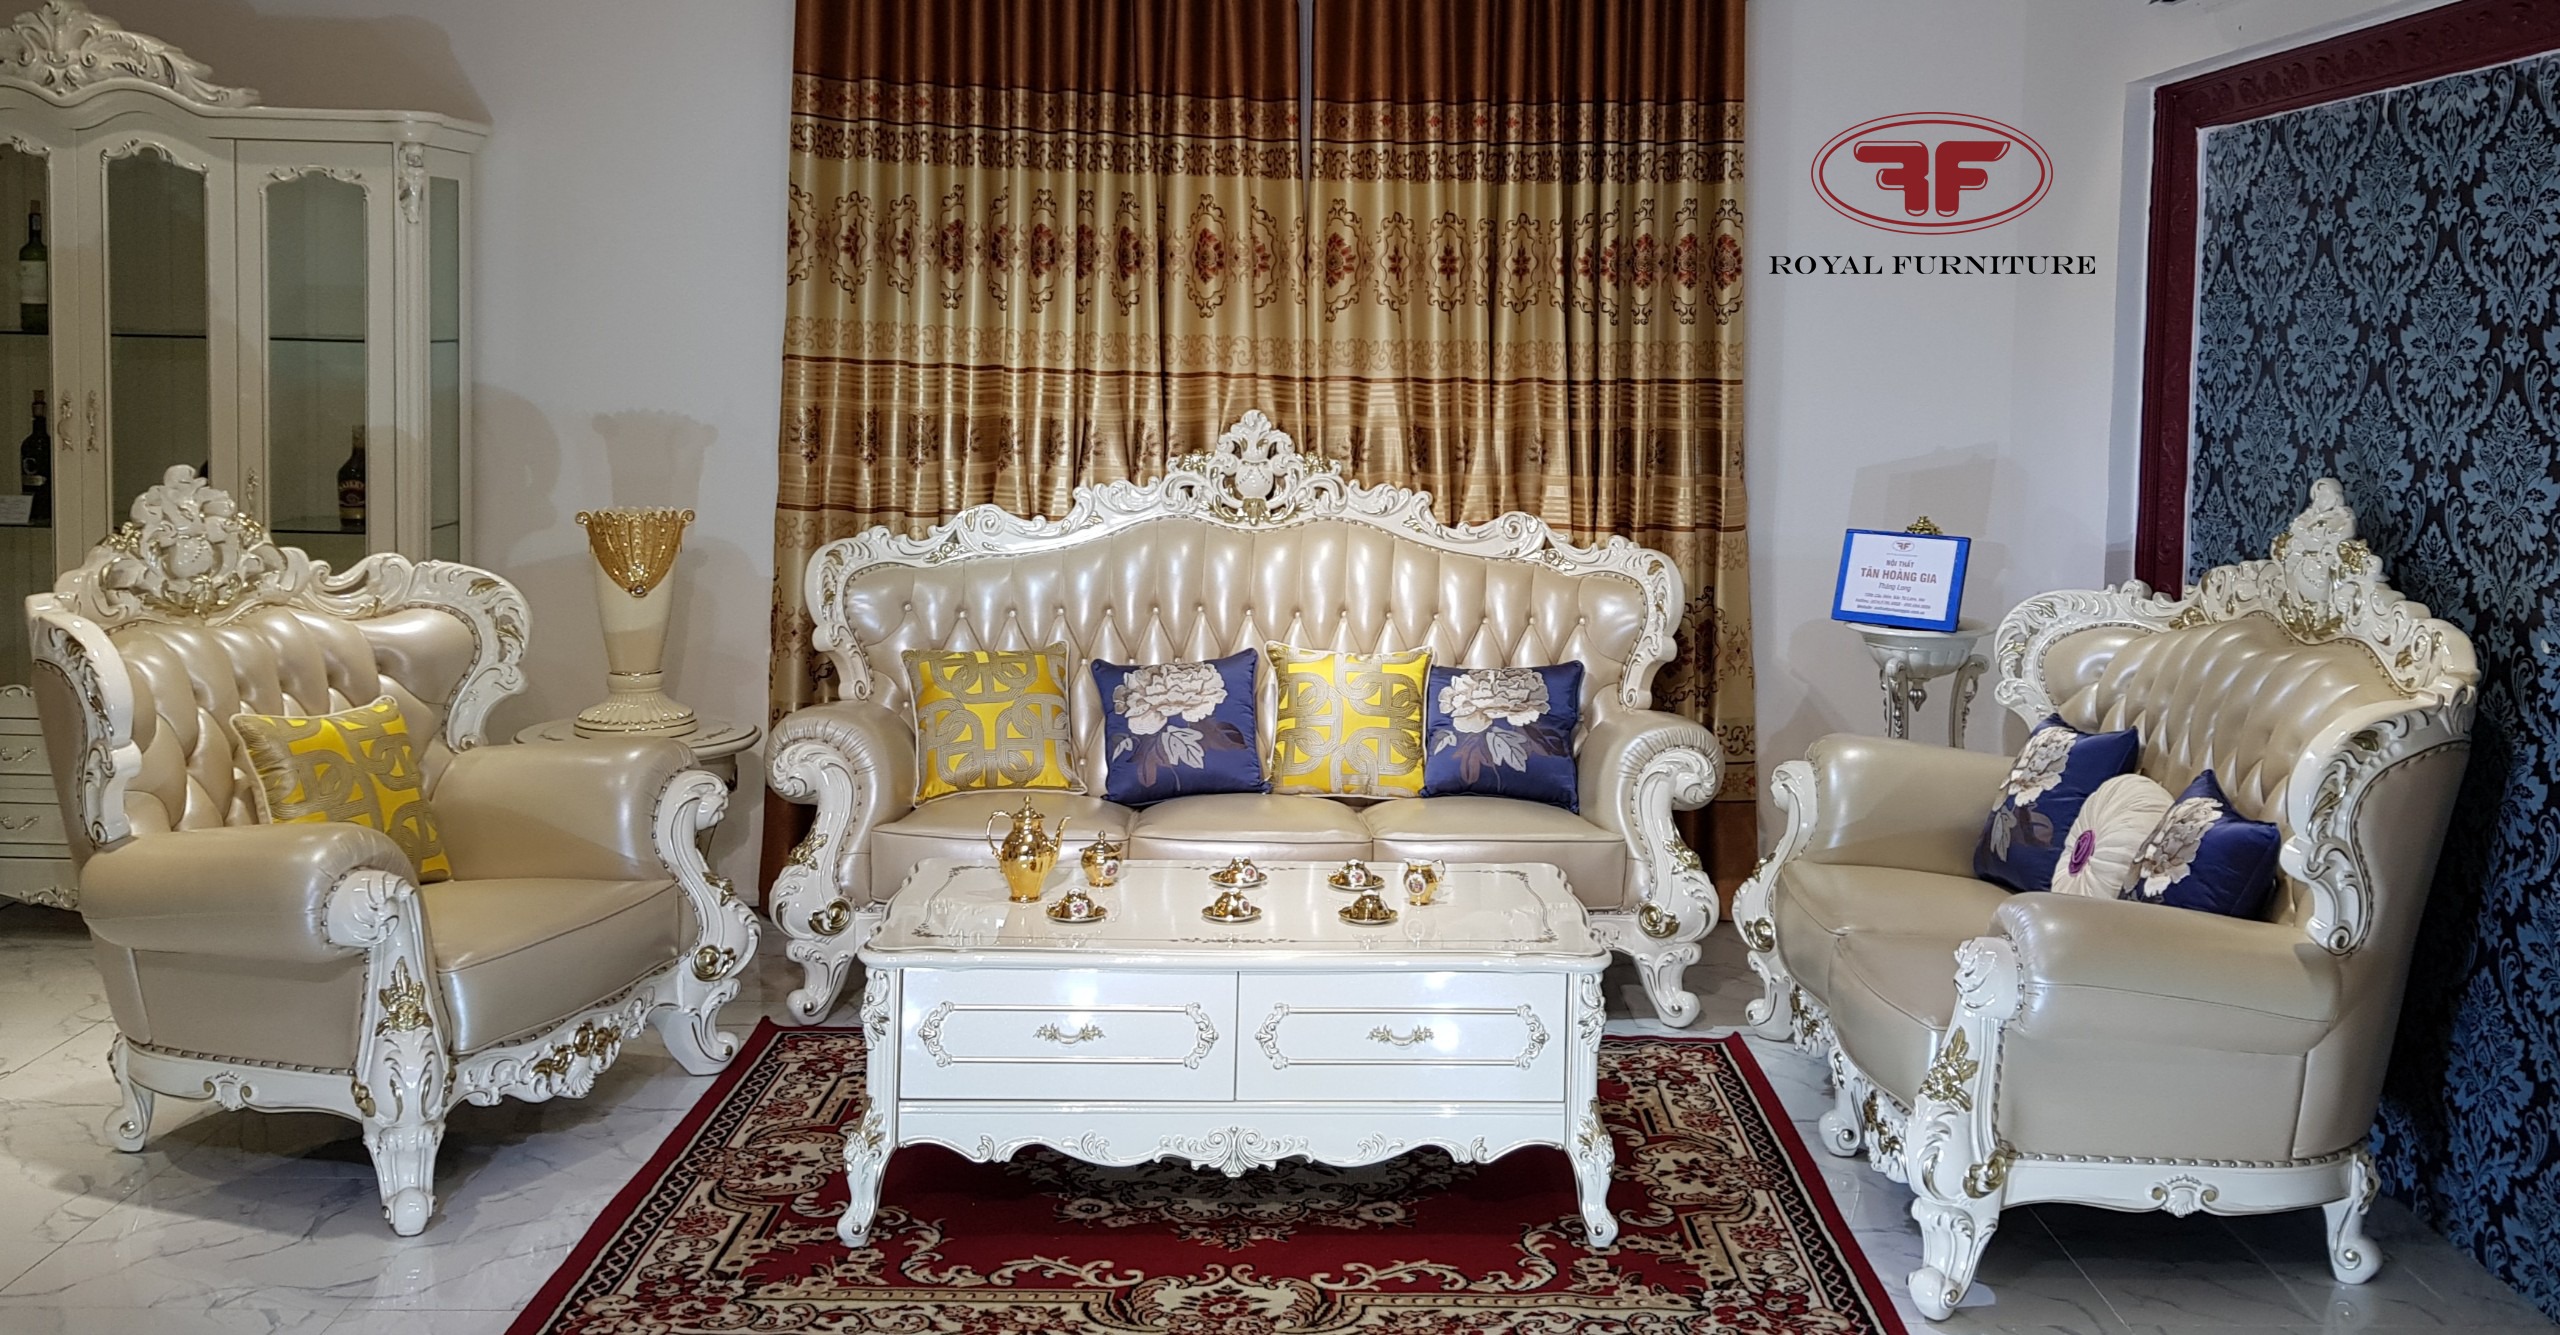 Bộ sofa tân cổ điển viền vàng đẳng cấp 9903B Tân Hoàng Gia nội thất sẽ mang lại sự tinh tế và sang trọng cho không gian sống của bạn. Với thiết kế đặc biệt và chất lượng tốt nhất, bộ sofa tân cổ điển của chúng tôi sẽ làm hài lòng tất cả khách hàng khó tính nhất.